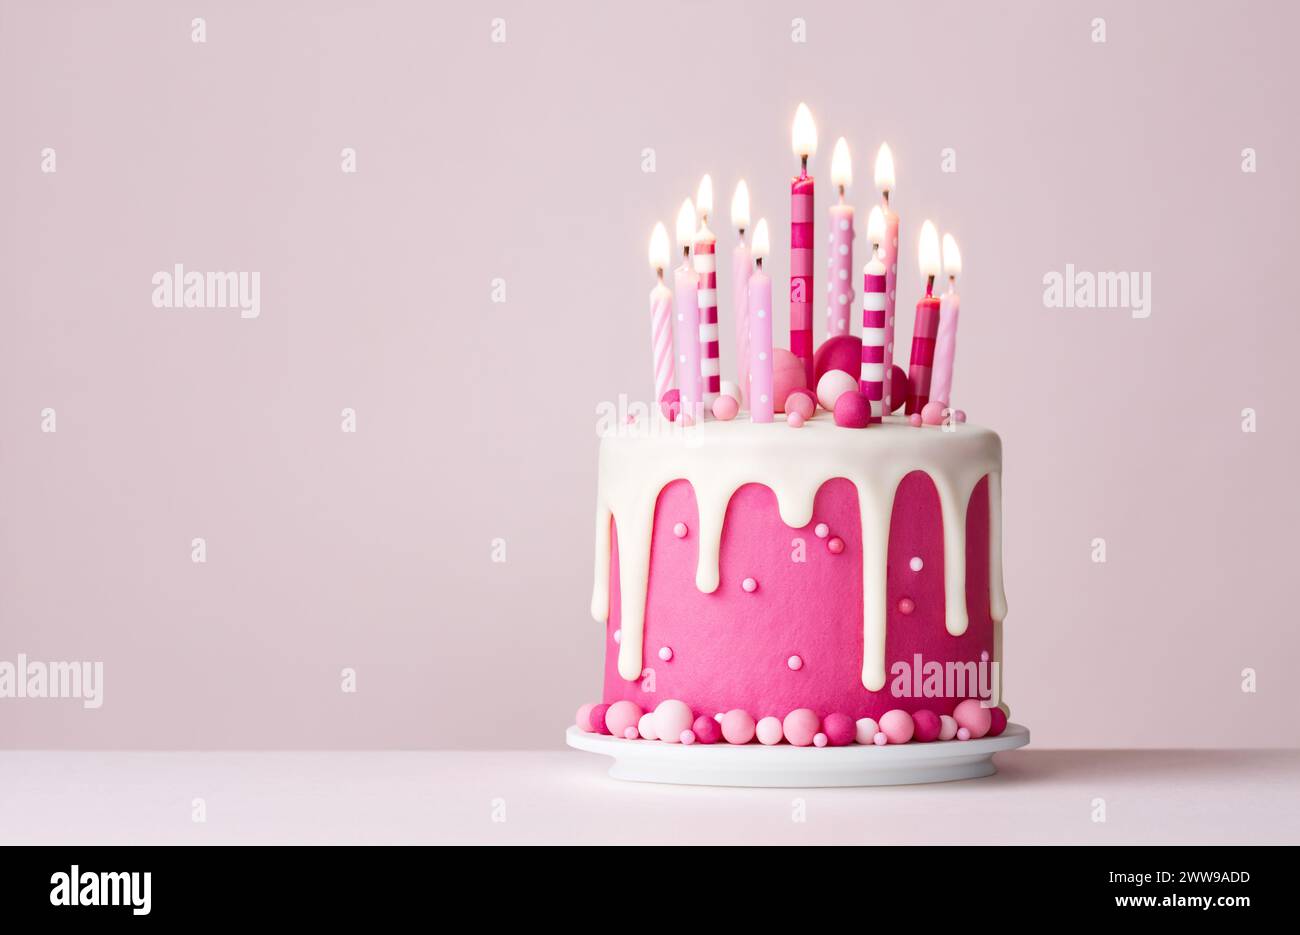 Gâteau d'anniversaire rose de célébration avec glaçage goutte à goutte et bougies d'anniversaire roses Banque D'Images